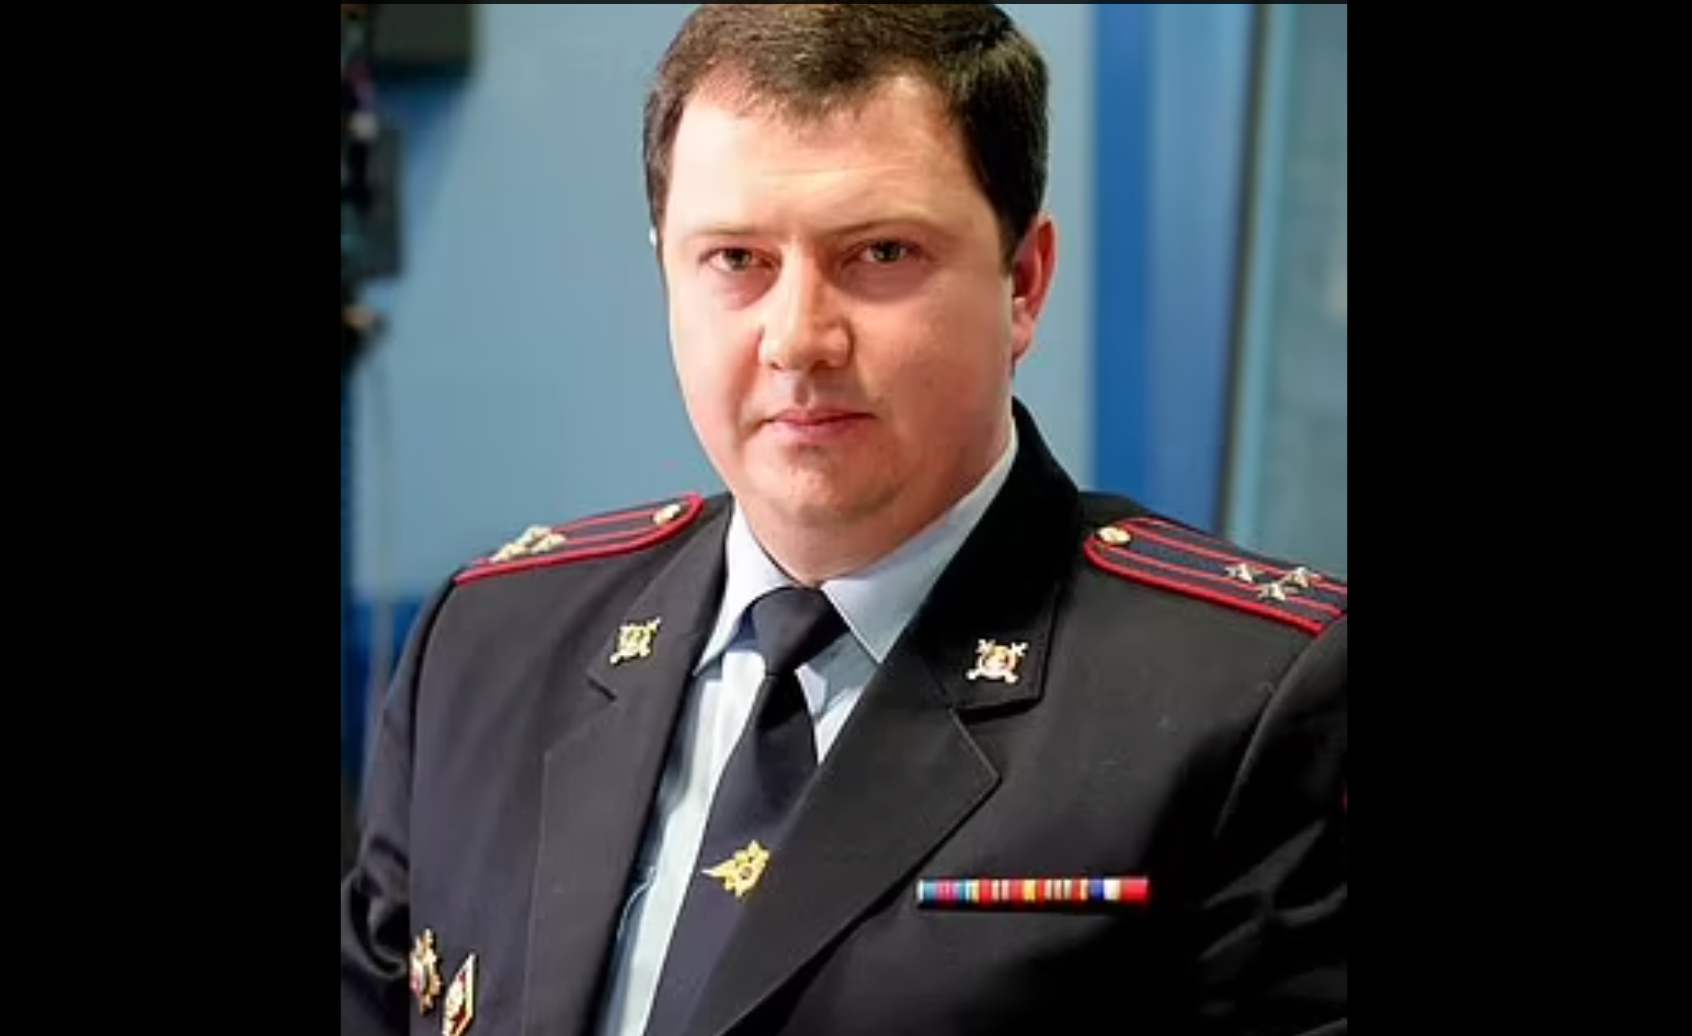 Tin thế giới - Bên trong biệt thự của sỹ quan Nga mới bị bắt giữ: Bồn cầu bằng vàng nguyên khối, phòng nào cũng toát lên vẻ xa xỉ